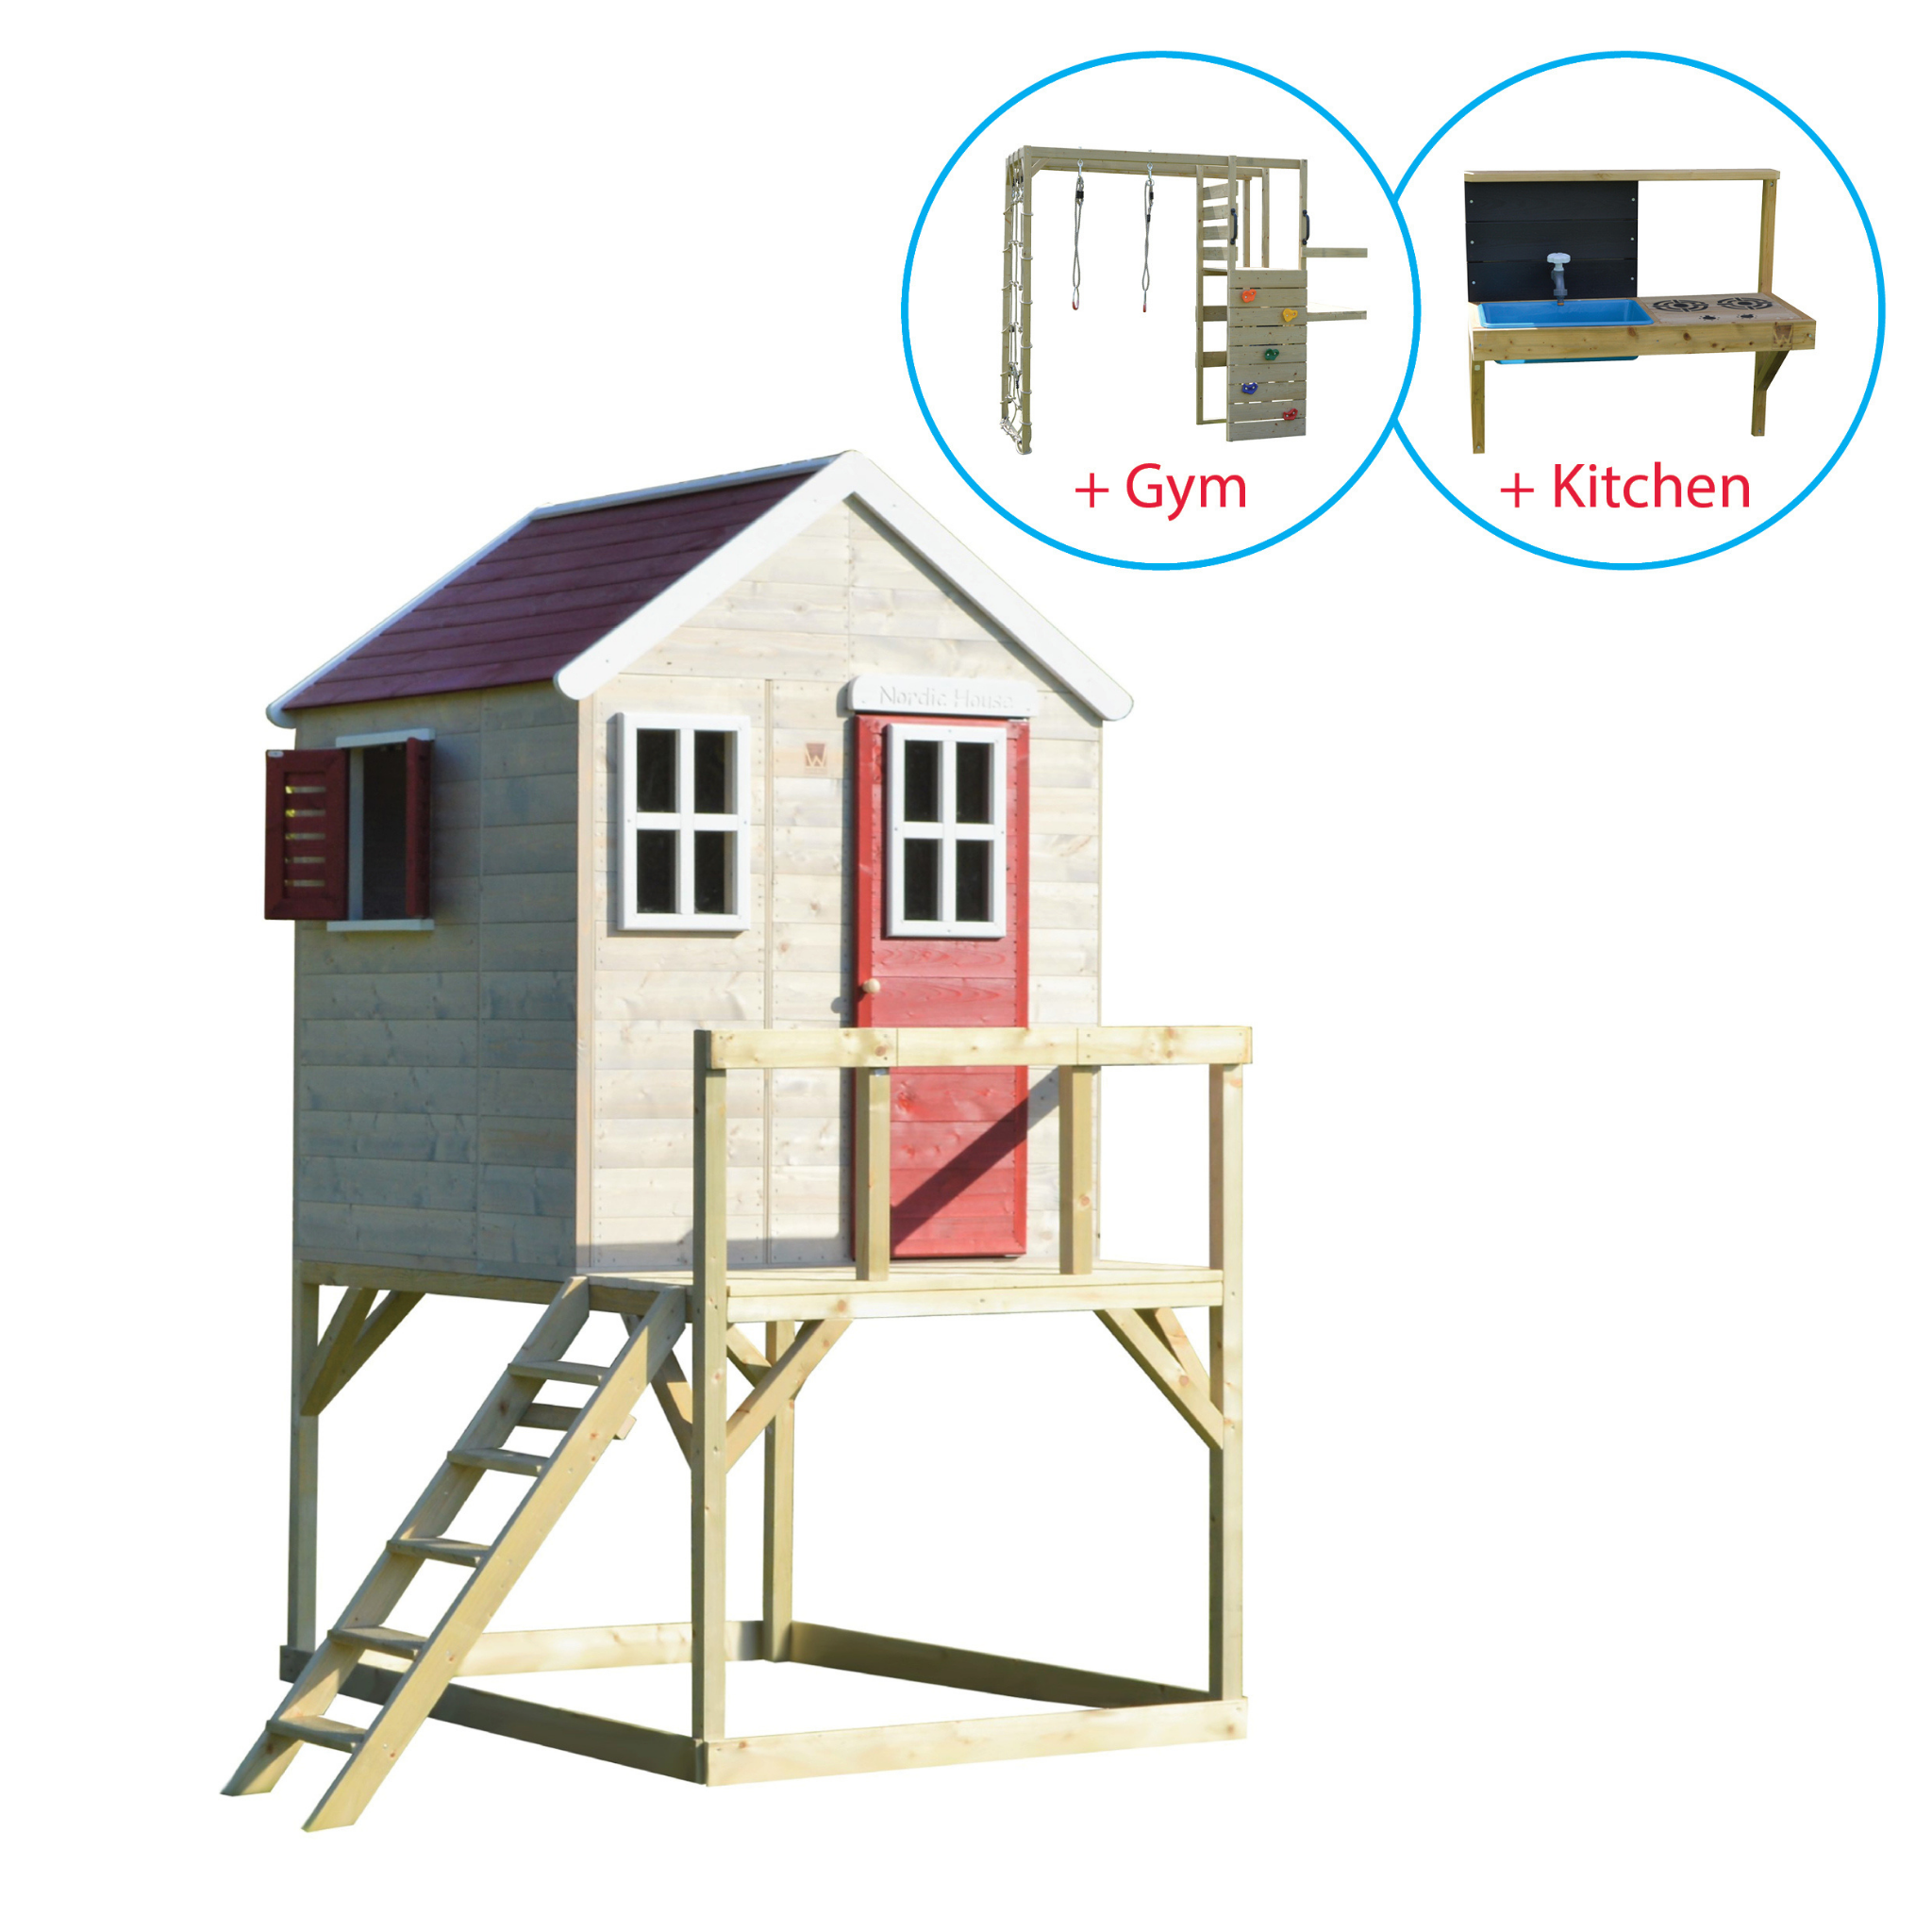 M21-GK My Lodge with Platform + Gym & Kitchen Attachment